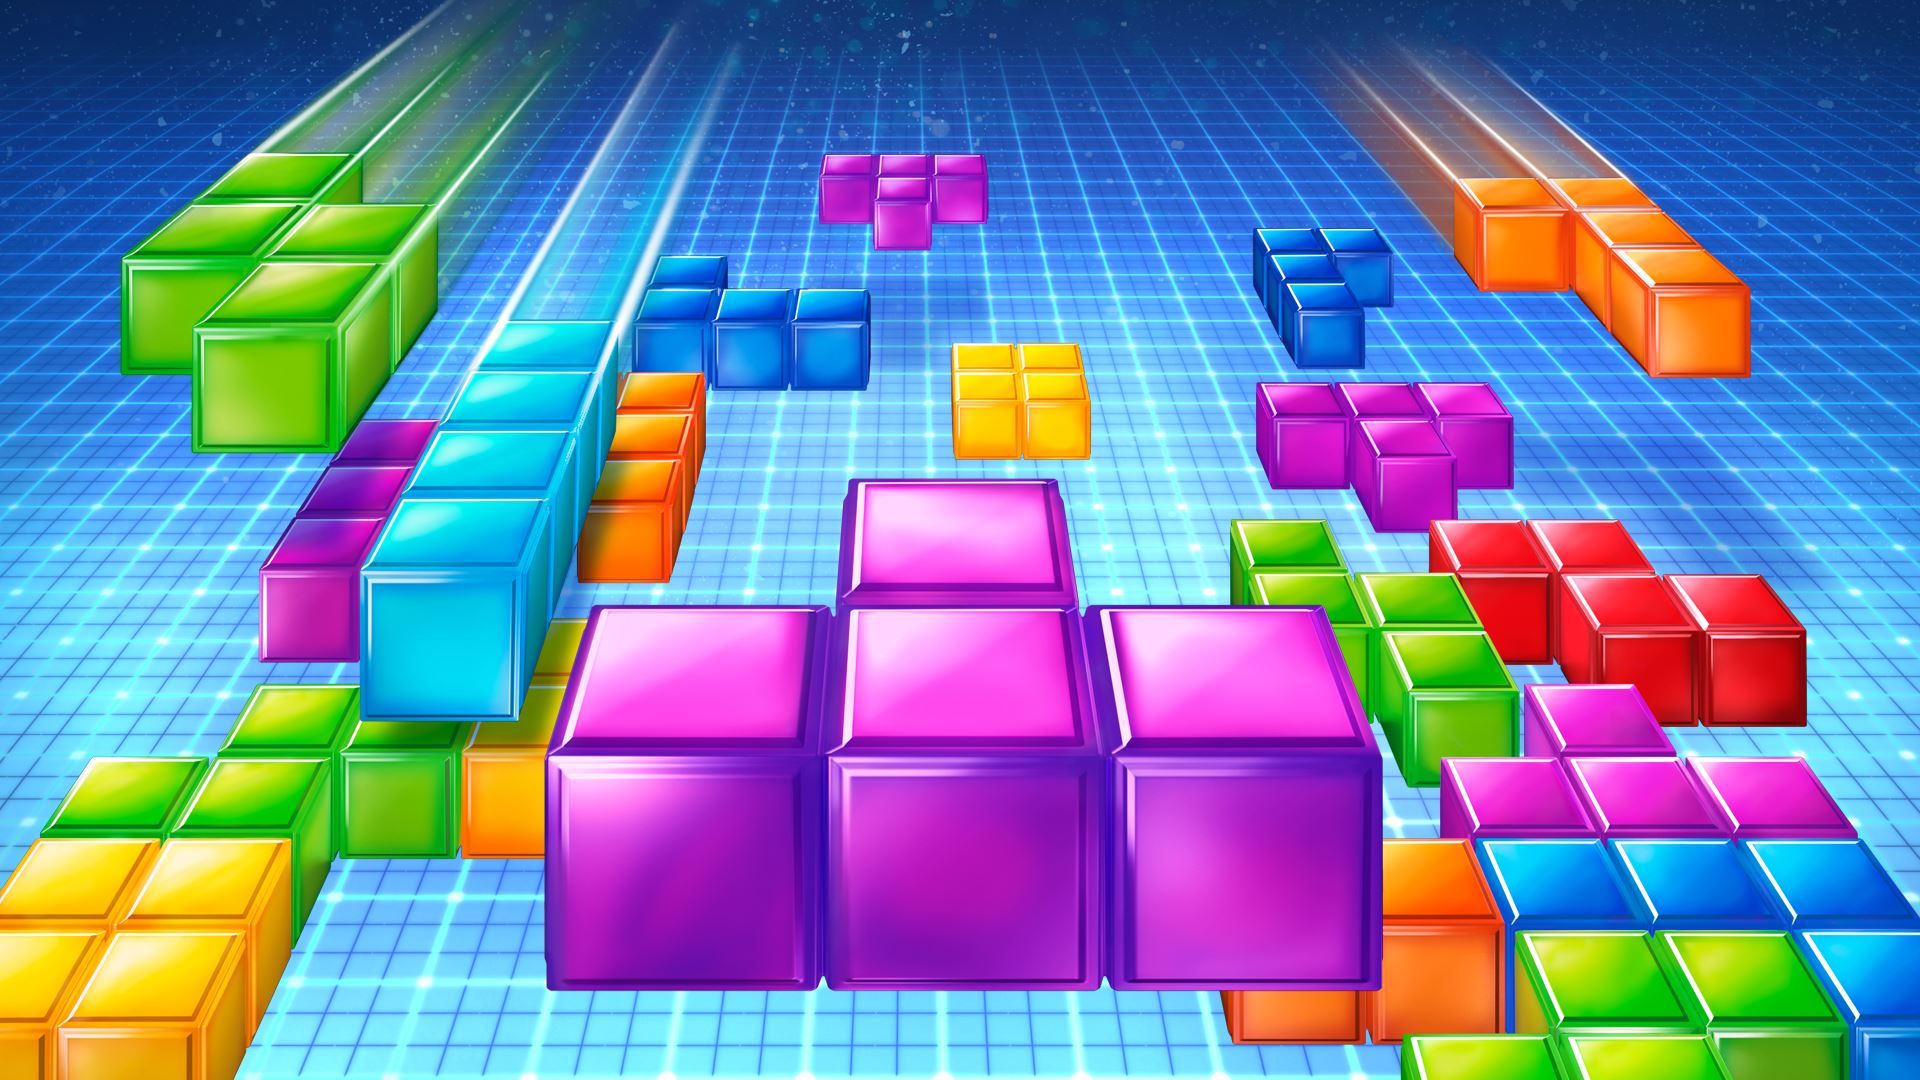 Tetris er blitt utgitt i mange forskjellige varianter. Dette er fra Tetris Ultima utgitt av Ubisoft.